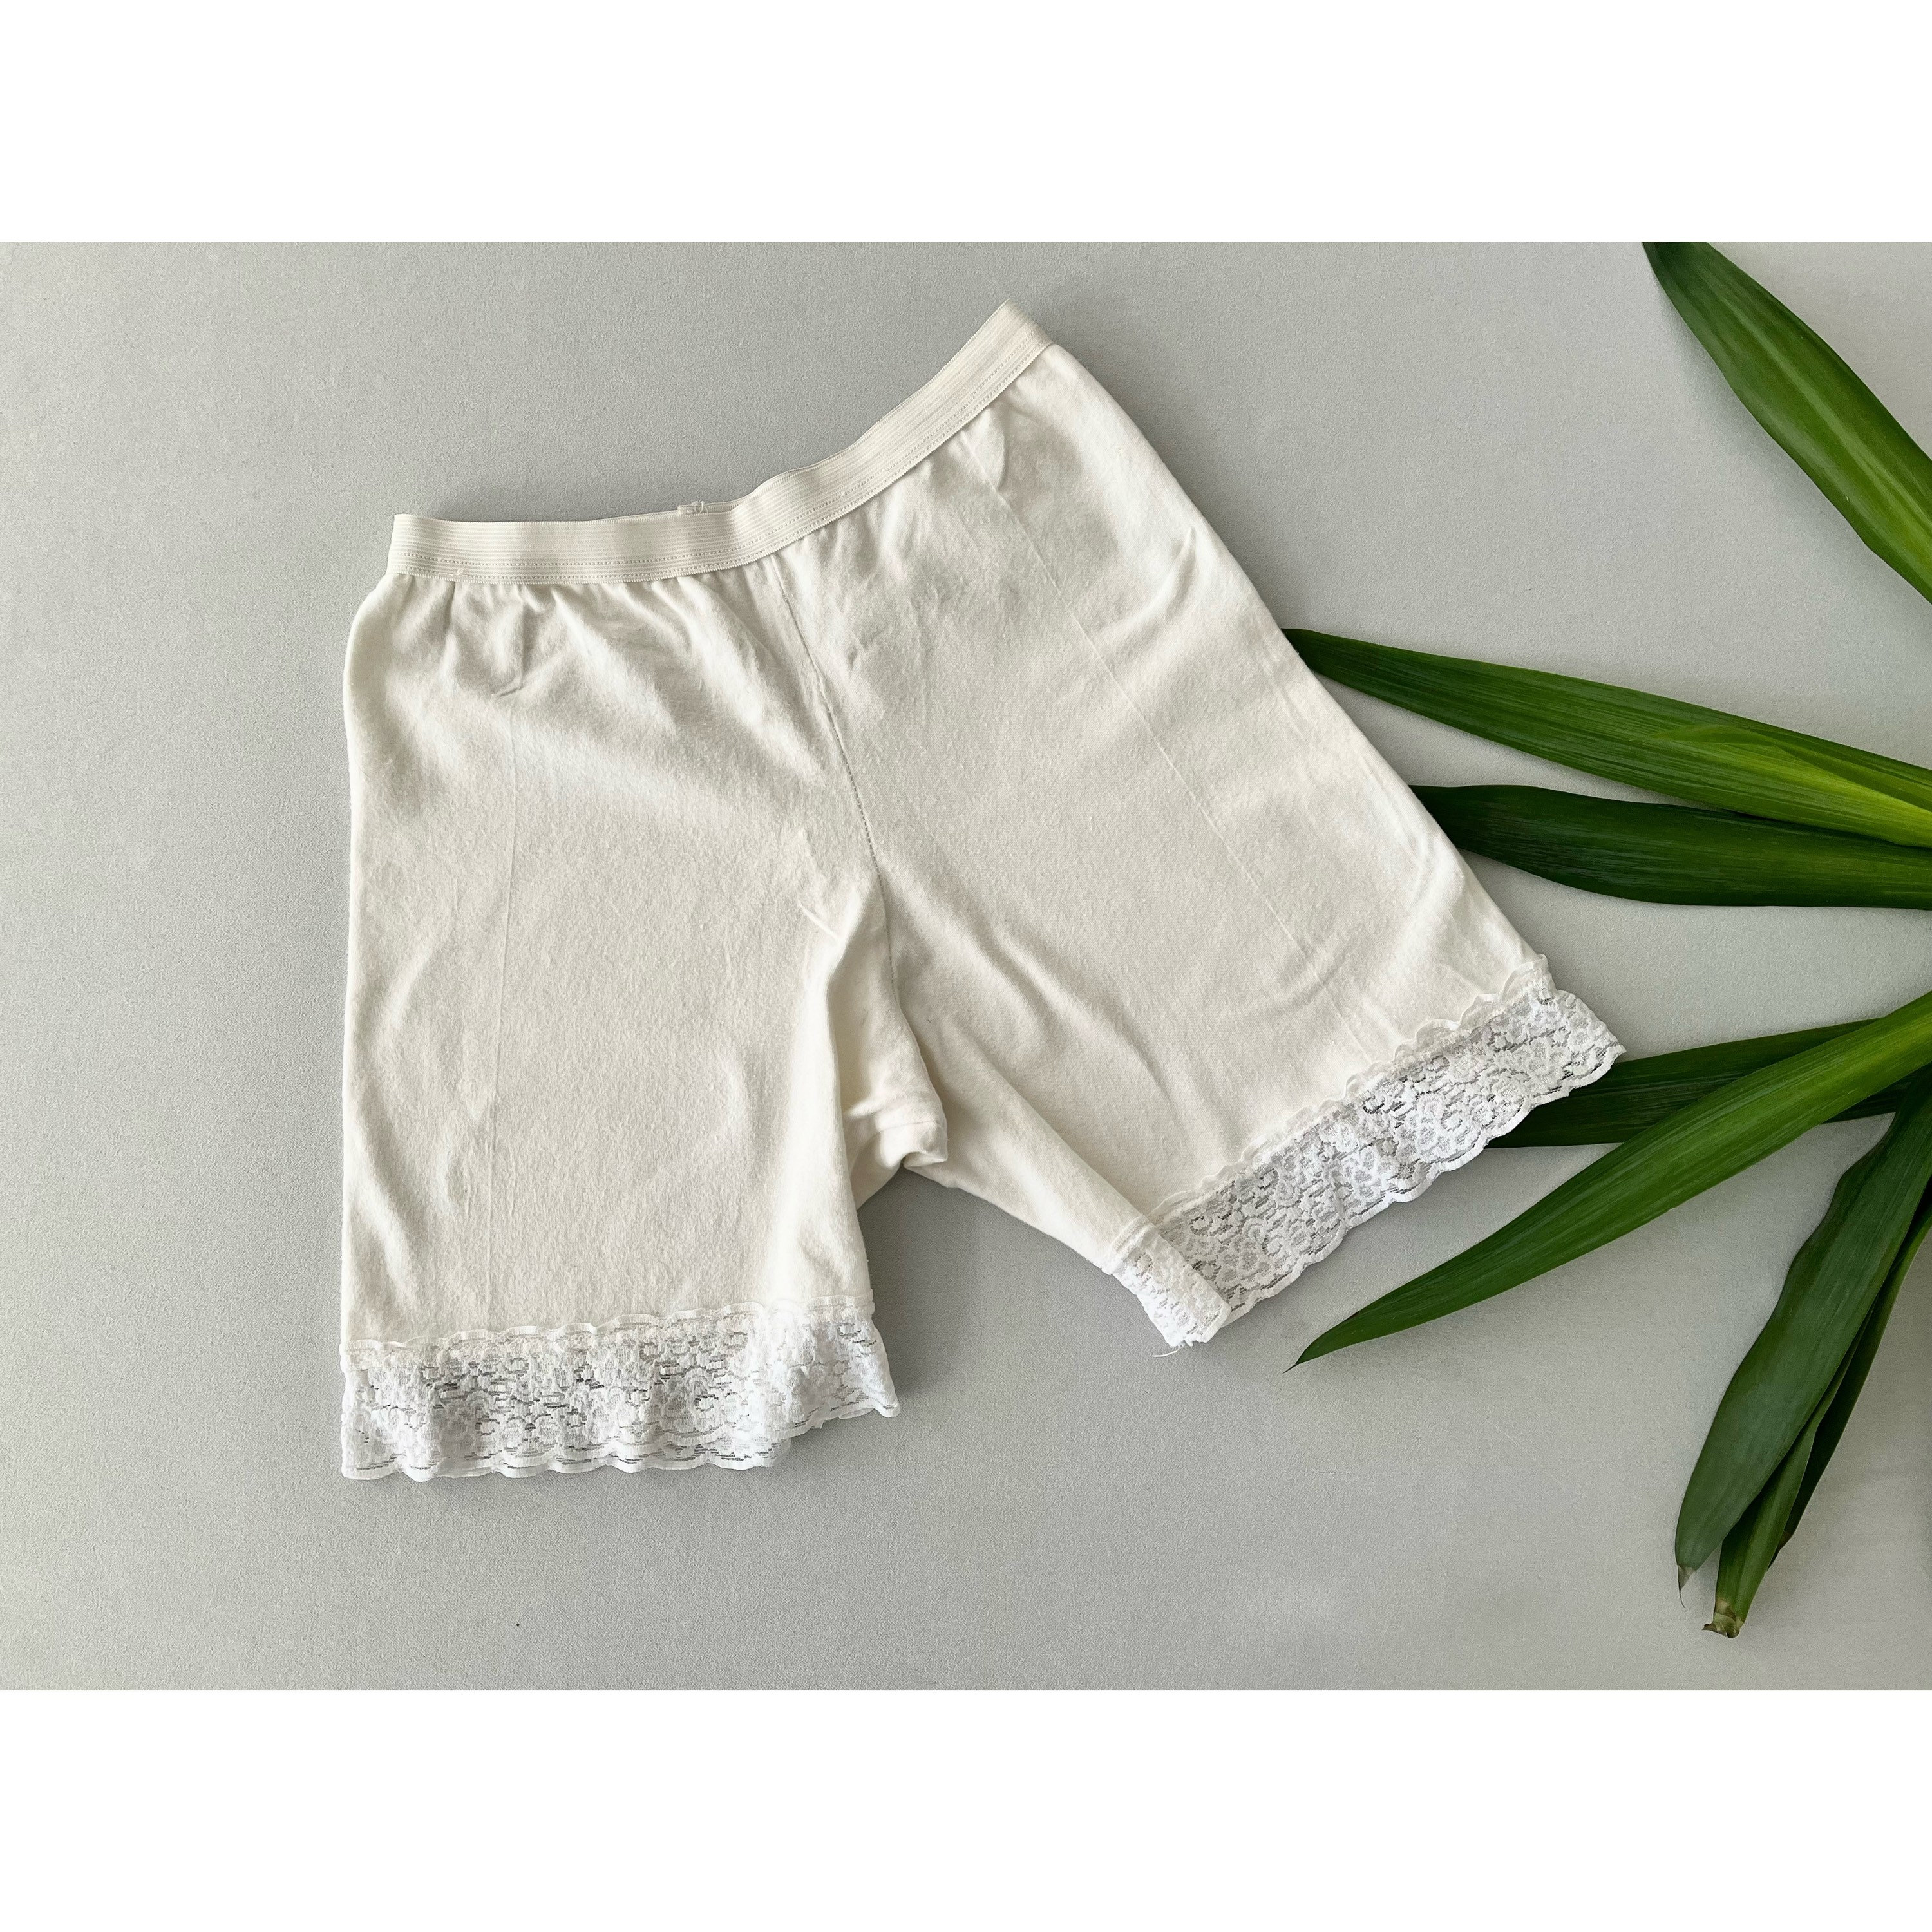 VINTAGE Cotton Spandex White Biker Shorts With Lace Trim 